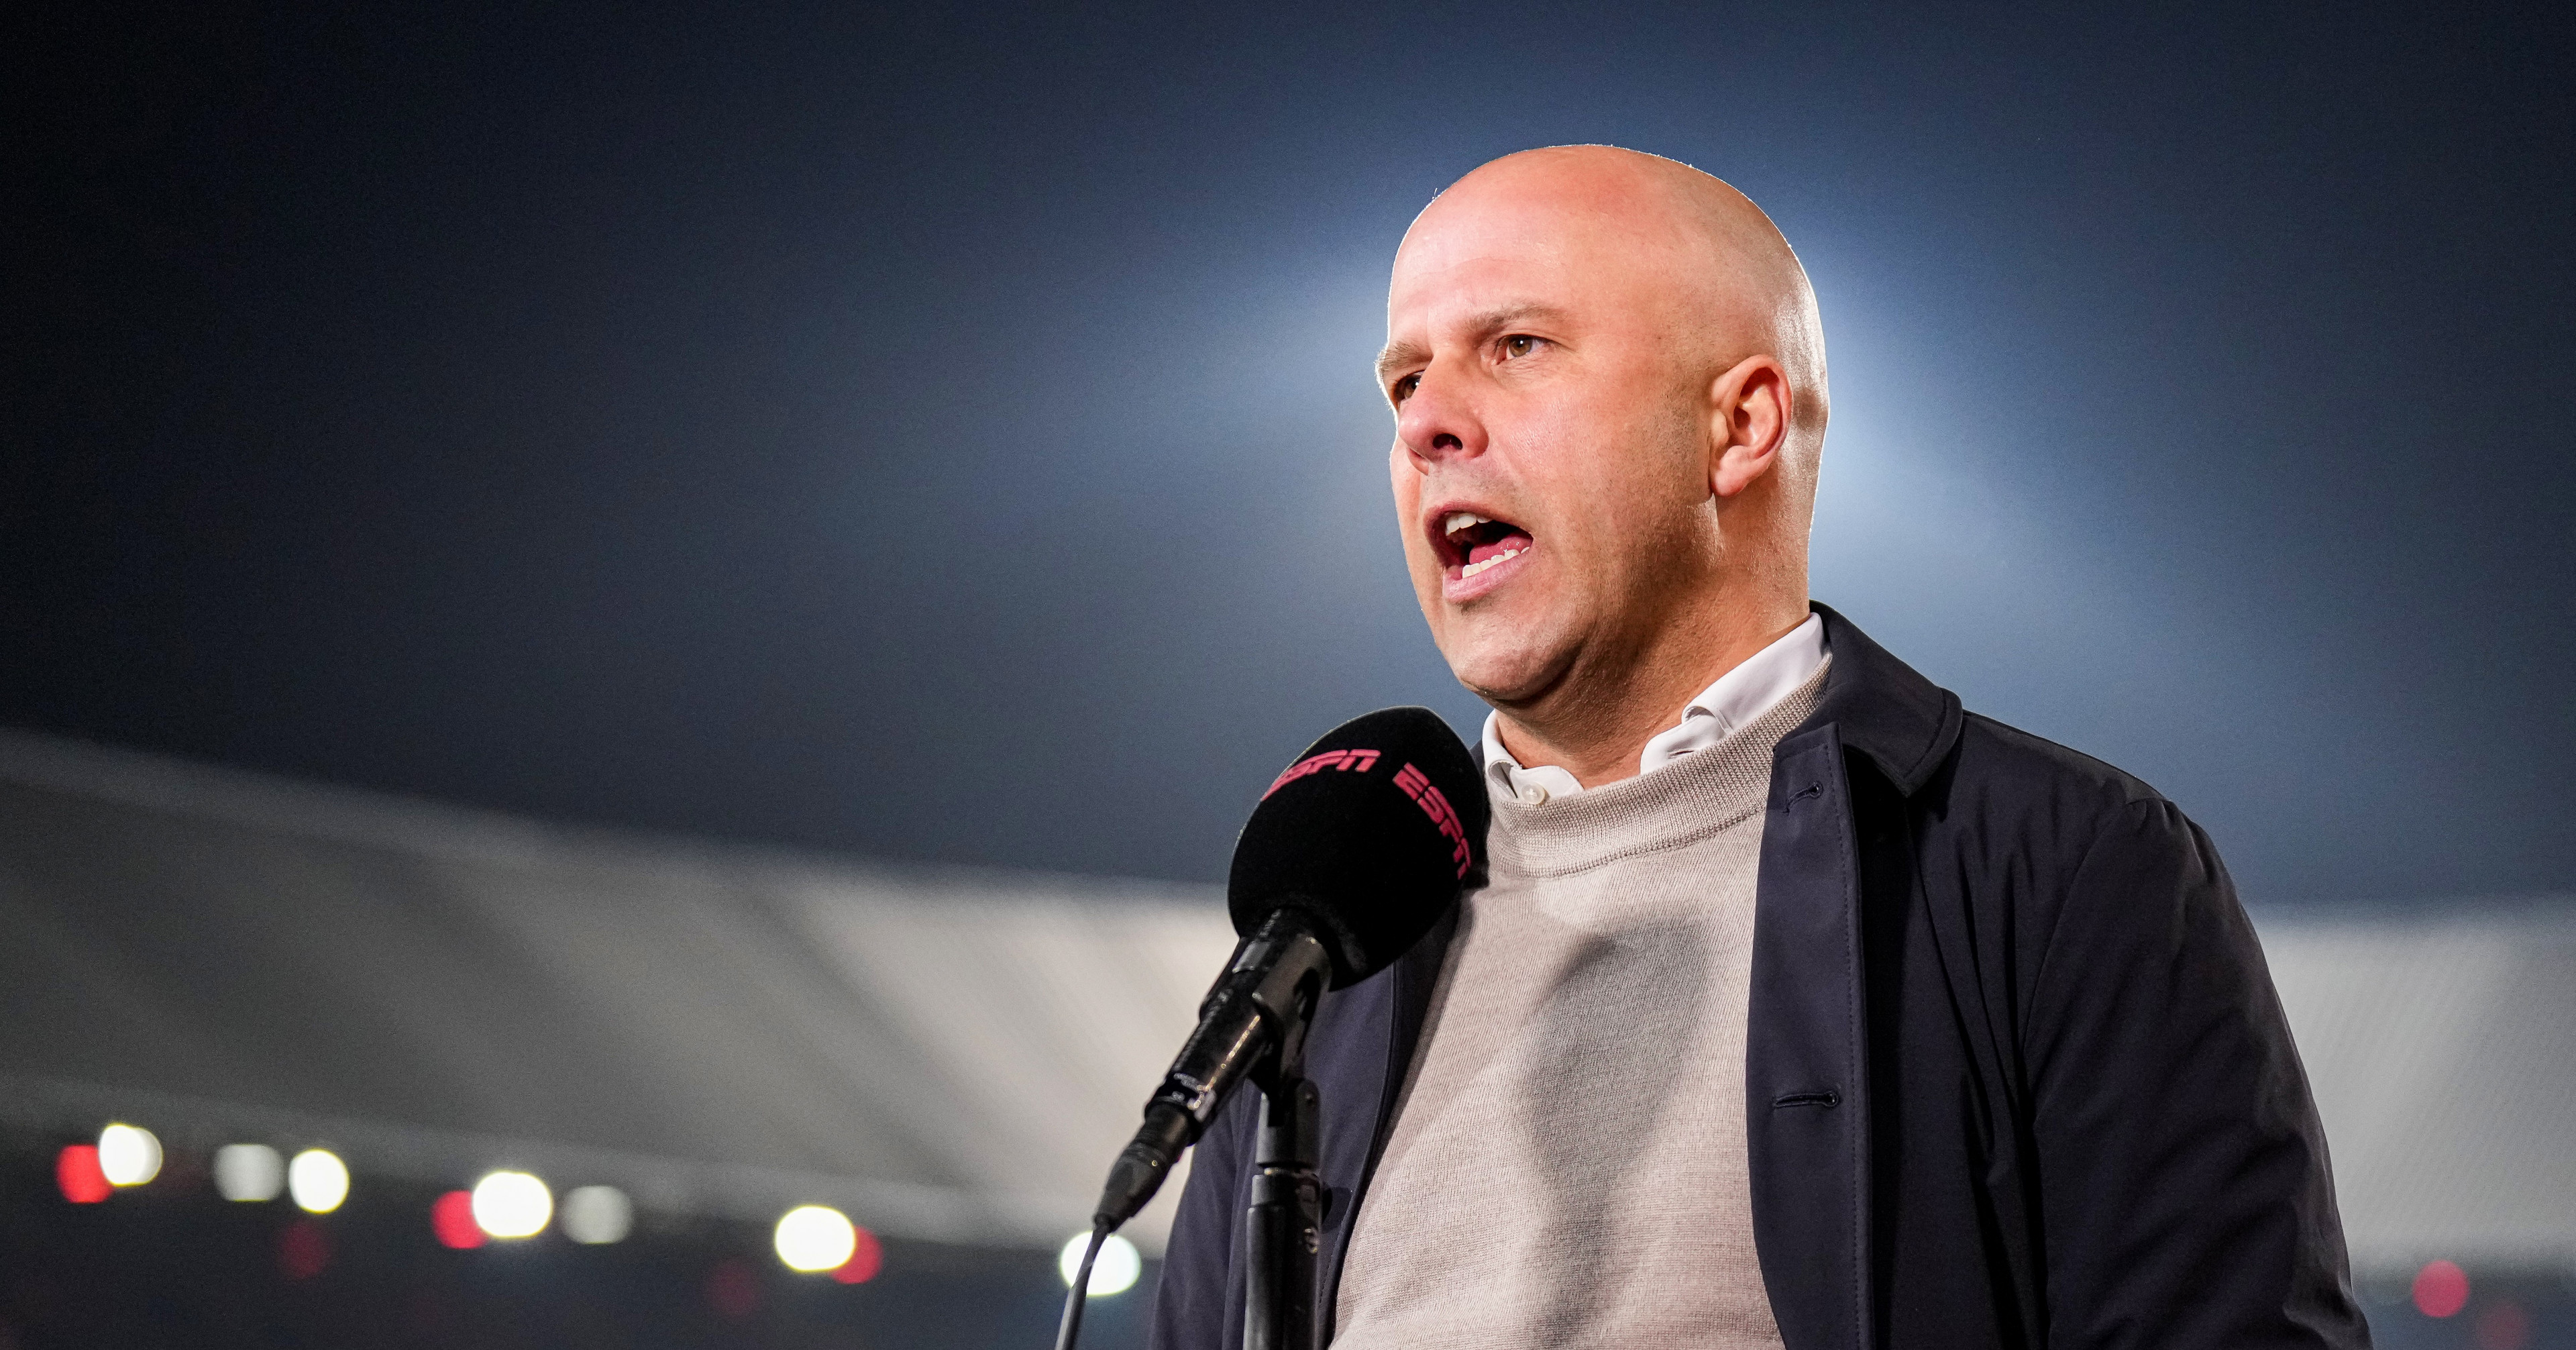 Slot licht basiself tegen PSV toe: "Nieuwkoop vandaag rechtsbuiten"